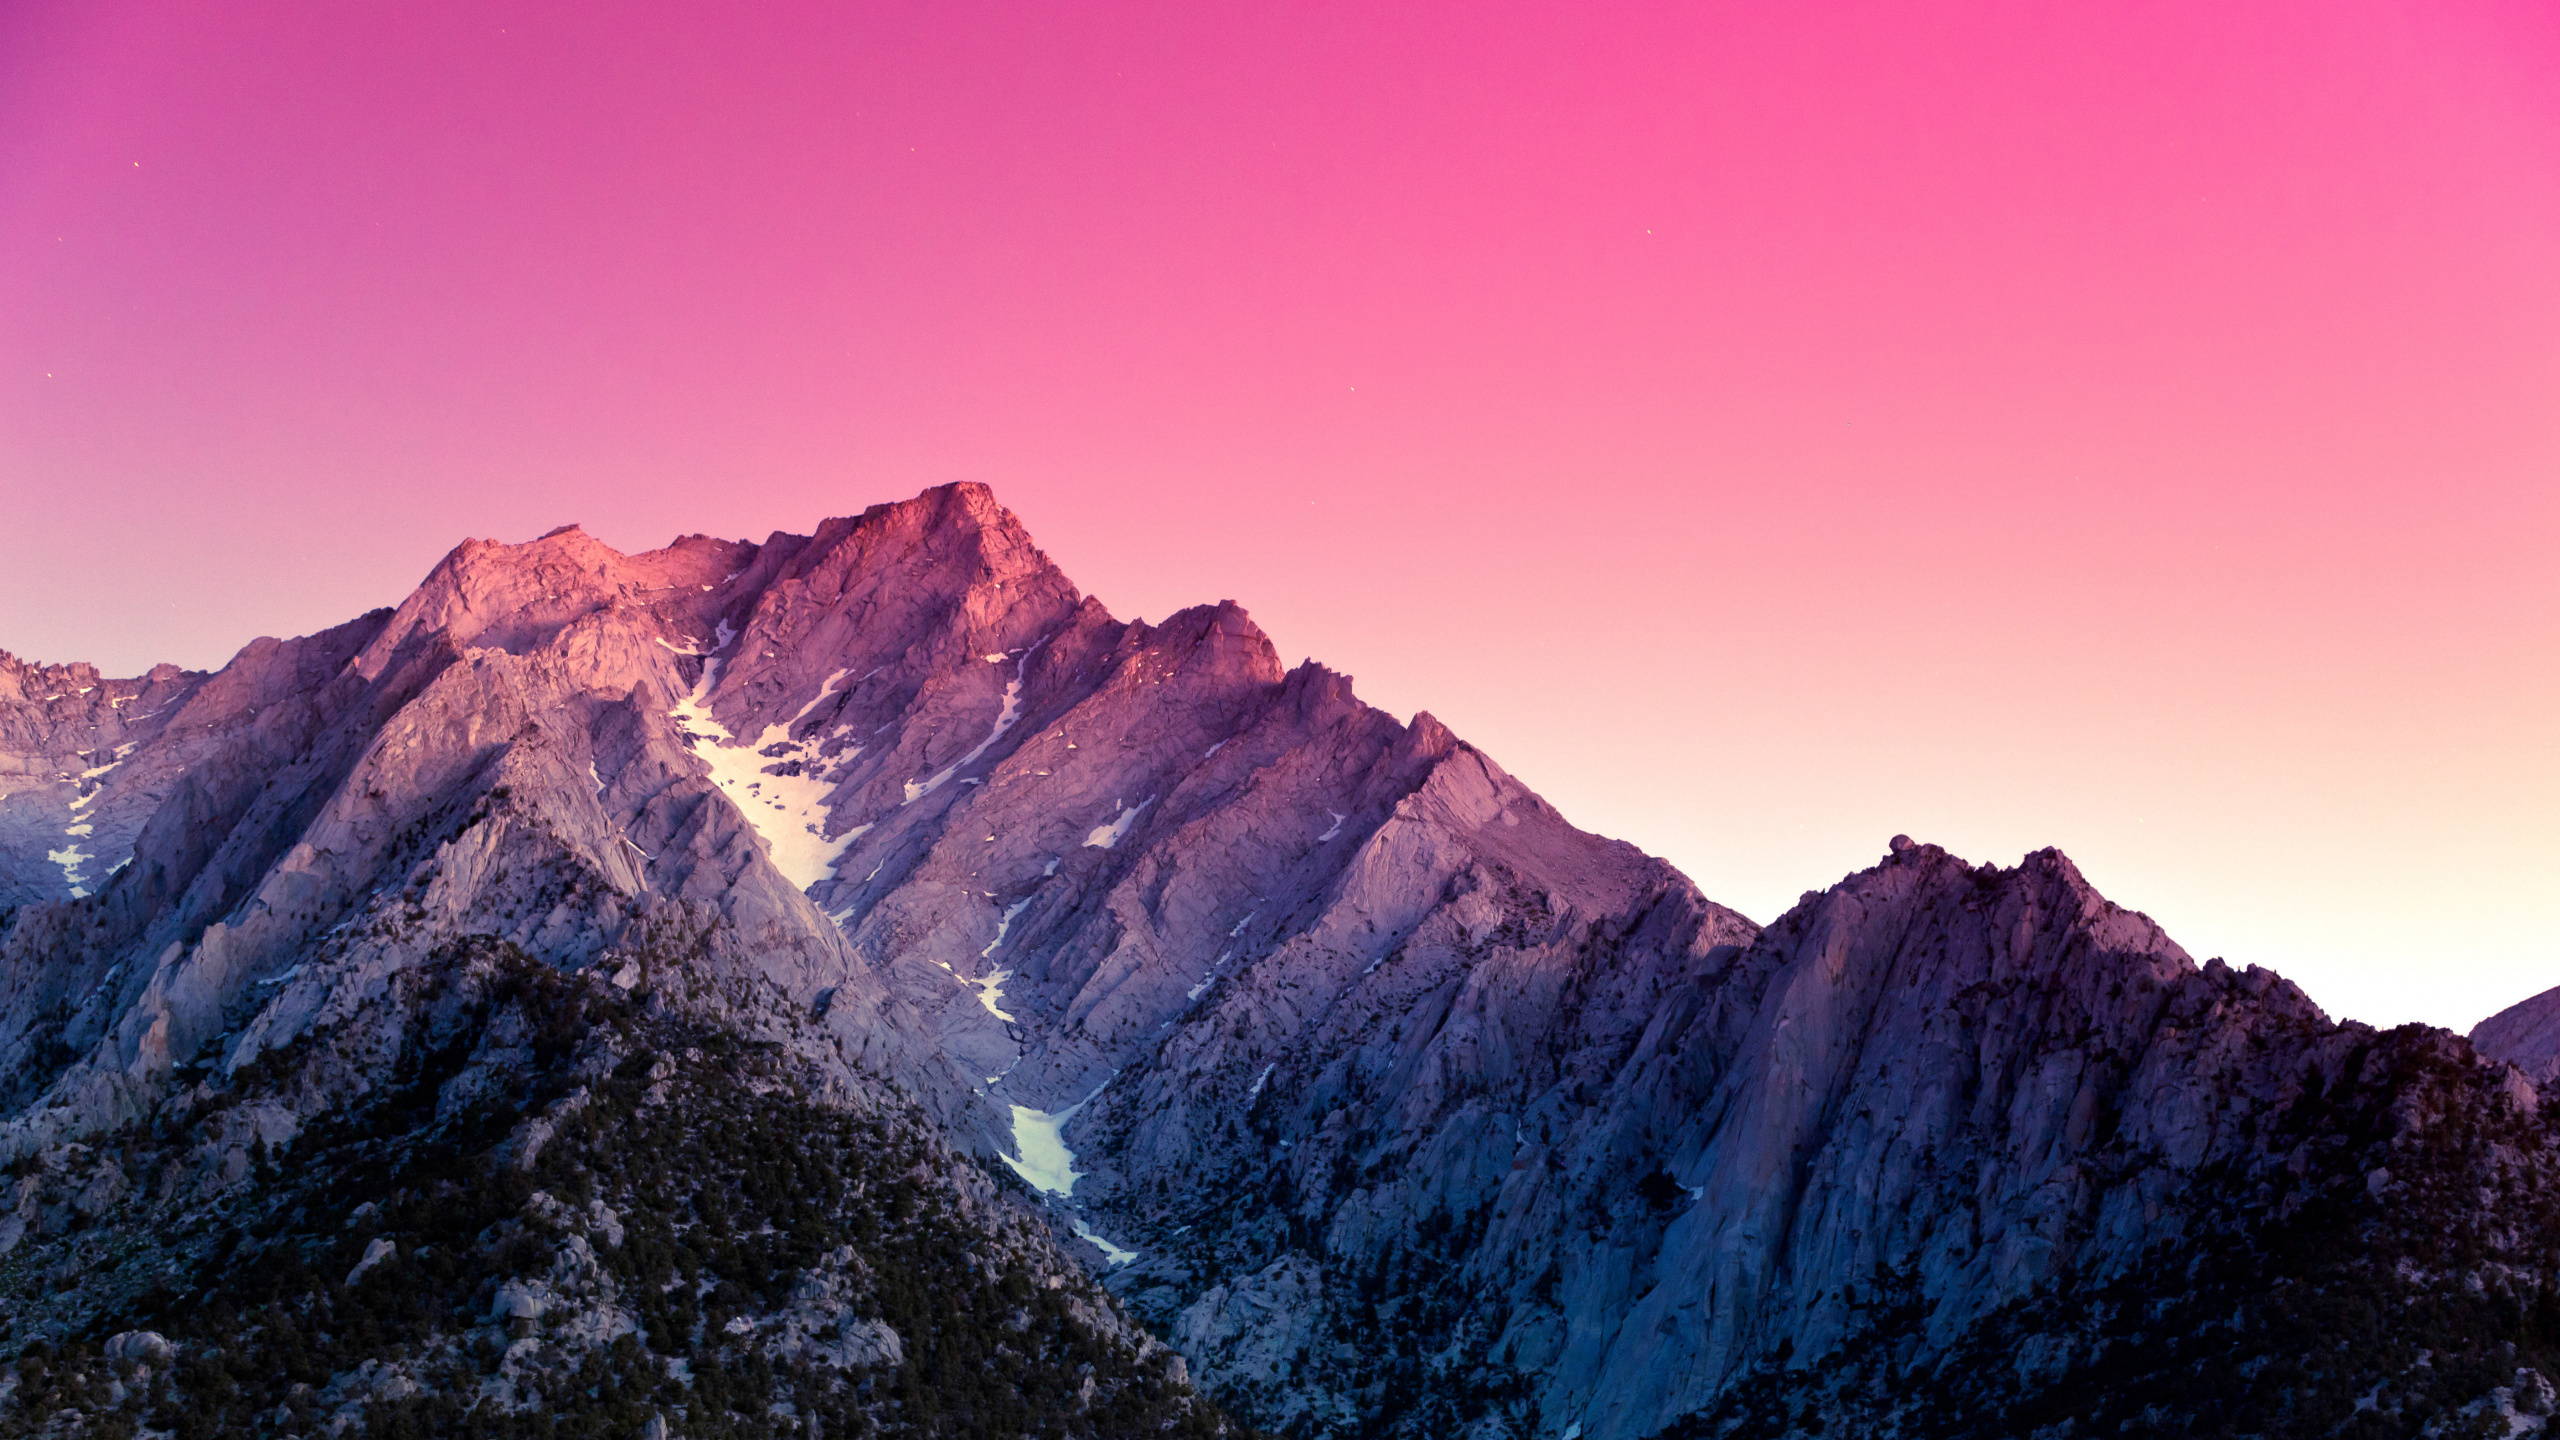 Montaña Rocosa Marrón y Gris Bajo un Cielo Azul Durante el Día. Wallpaper in 2560x1440 Resolution